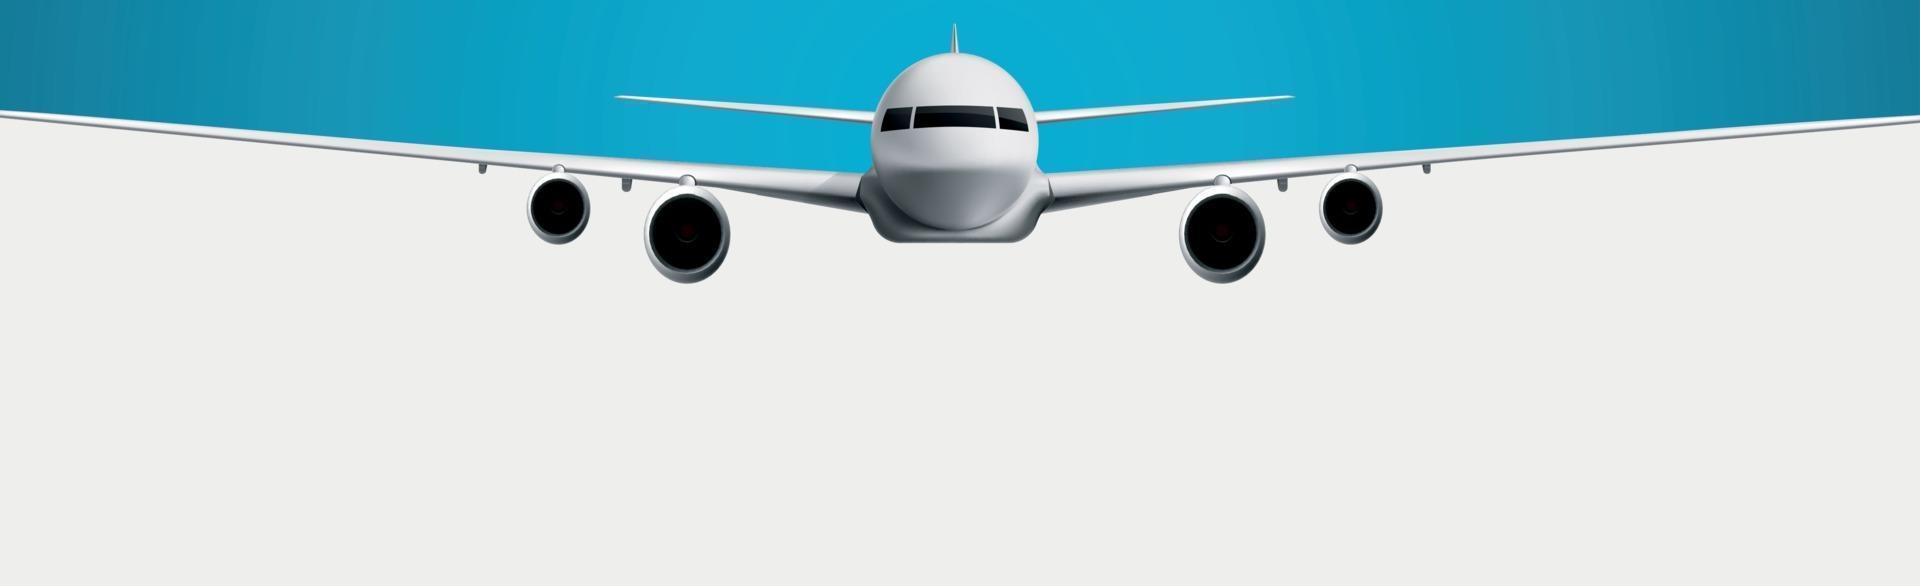 realistisk modell av ett civilt flygplan på en vit och blå bakgrund - vektor